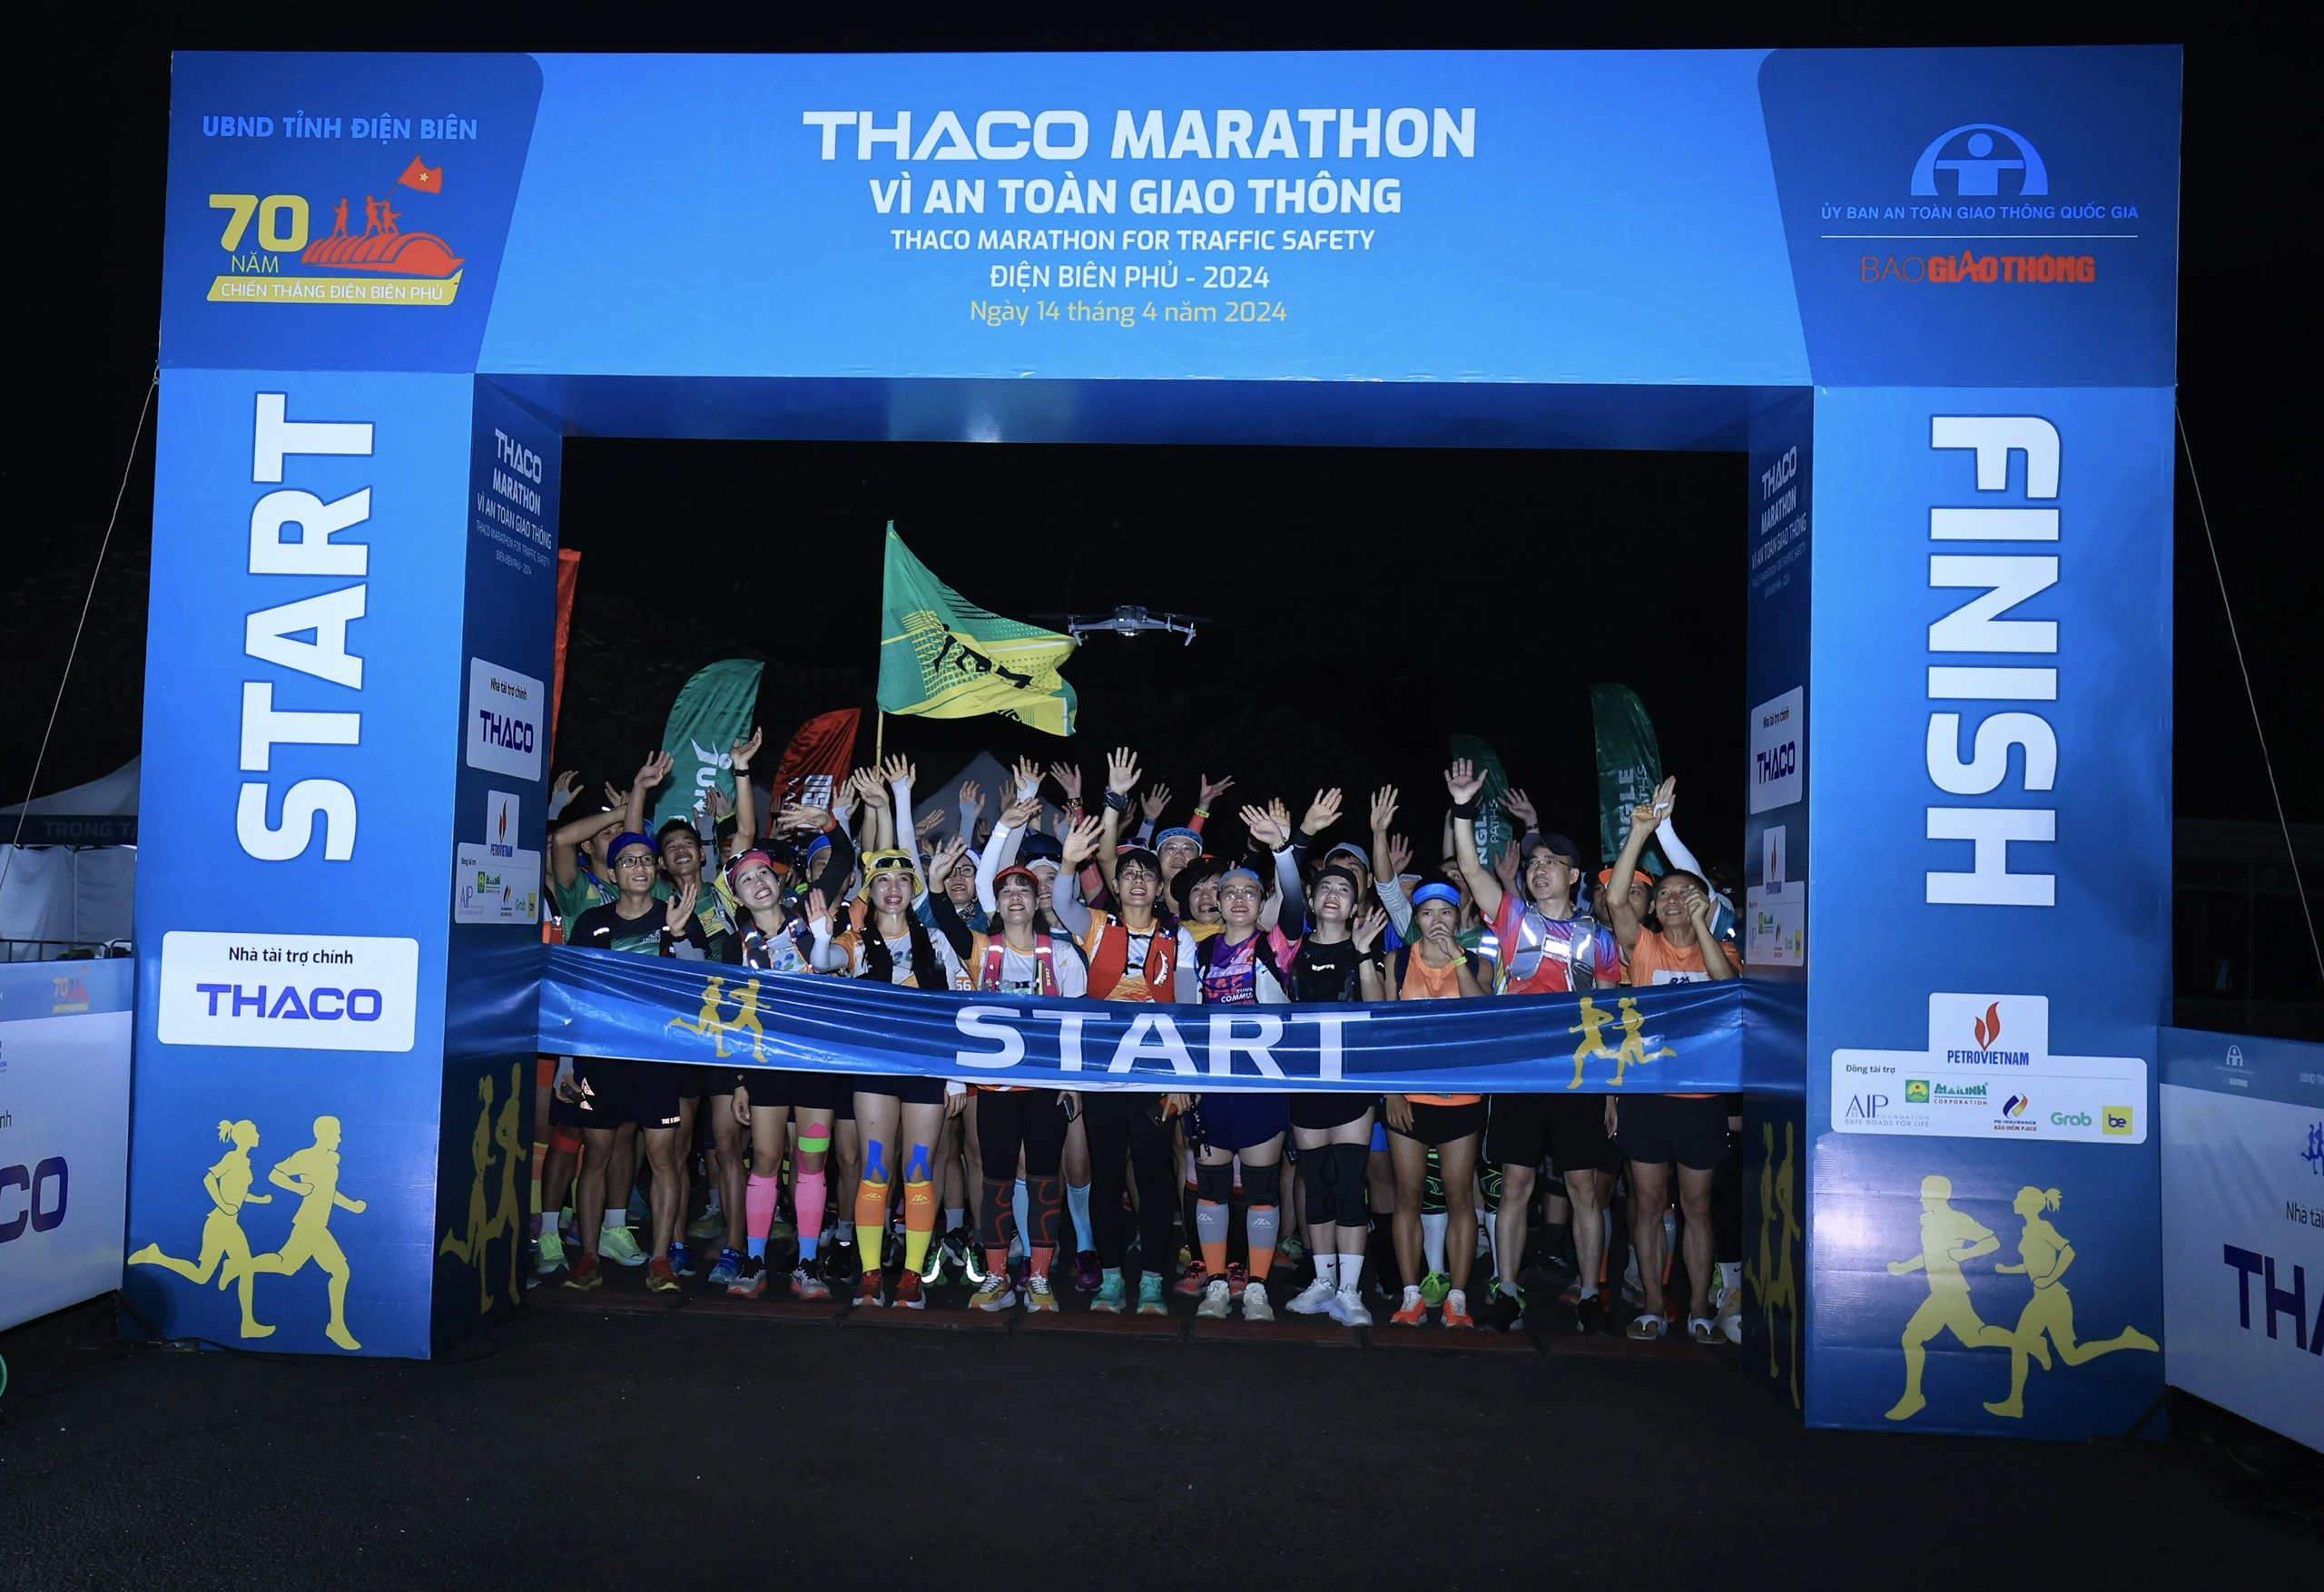 Trực tiếp: Giải THACO Marathon vì ATGT - Điện Biên Phủ 2024 thành công rực rỡ- Ảnh 41.